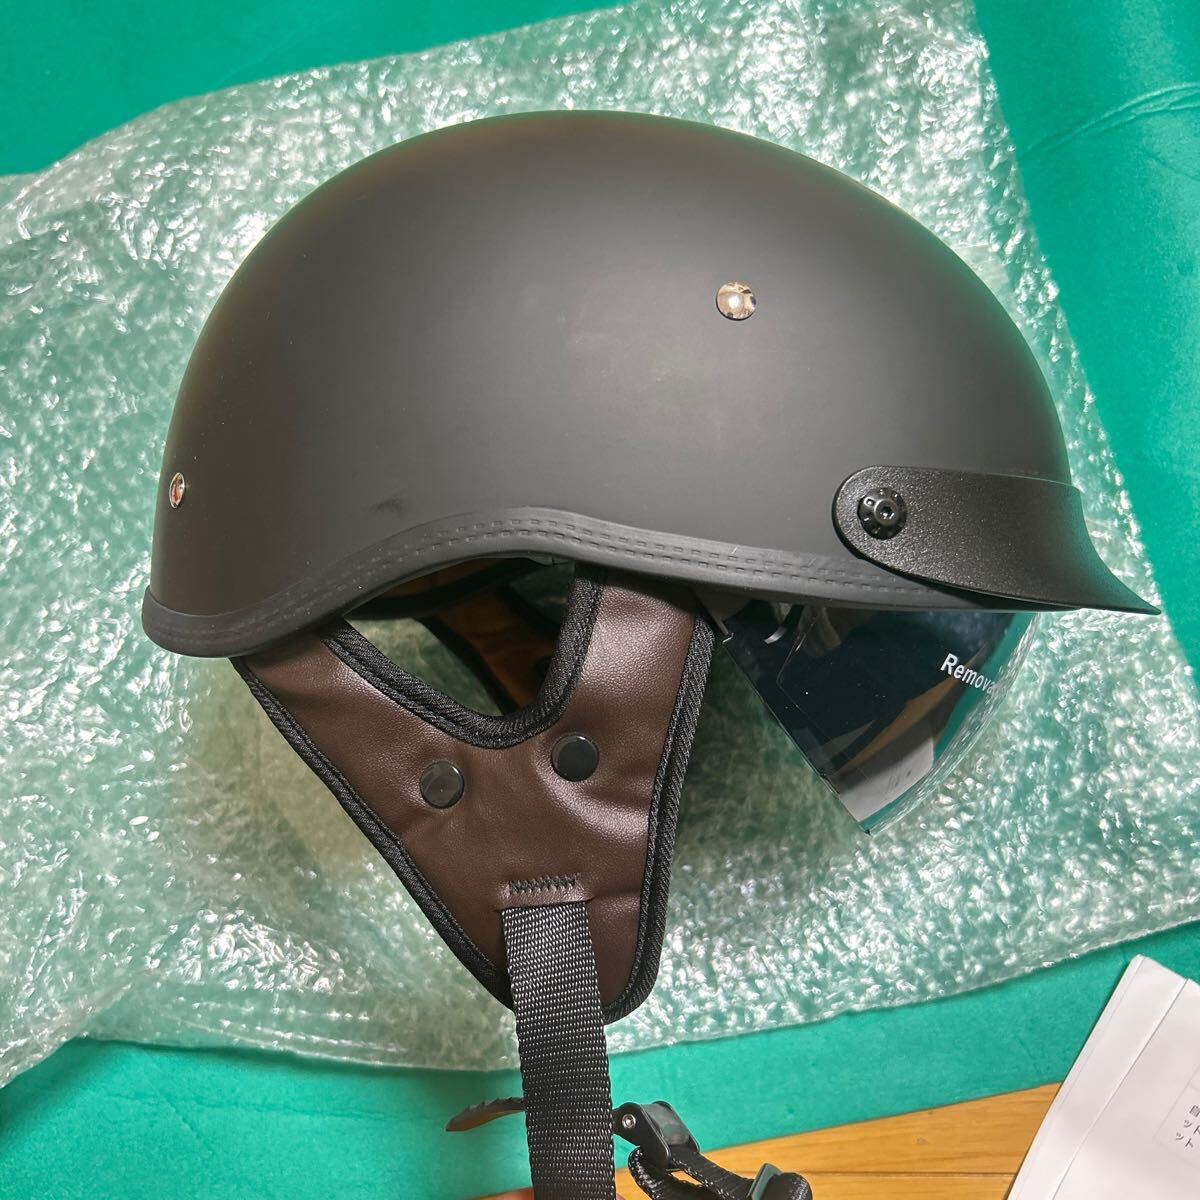 ヘルメット ハーフヘルメット ベレー帽 半帽ヘルメット ビンテージヘルメット メンズ レディース 耐衝撃性 超軽量 個性 Lサイズ 59-60cmの画像1